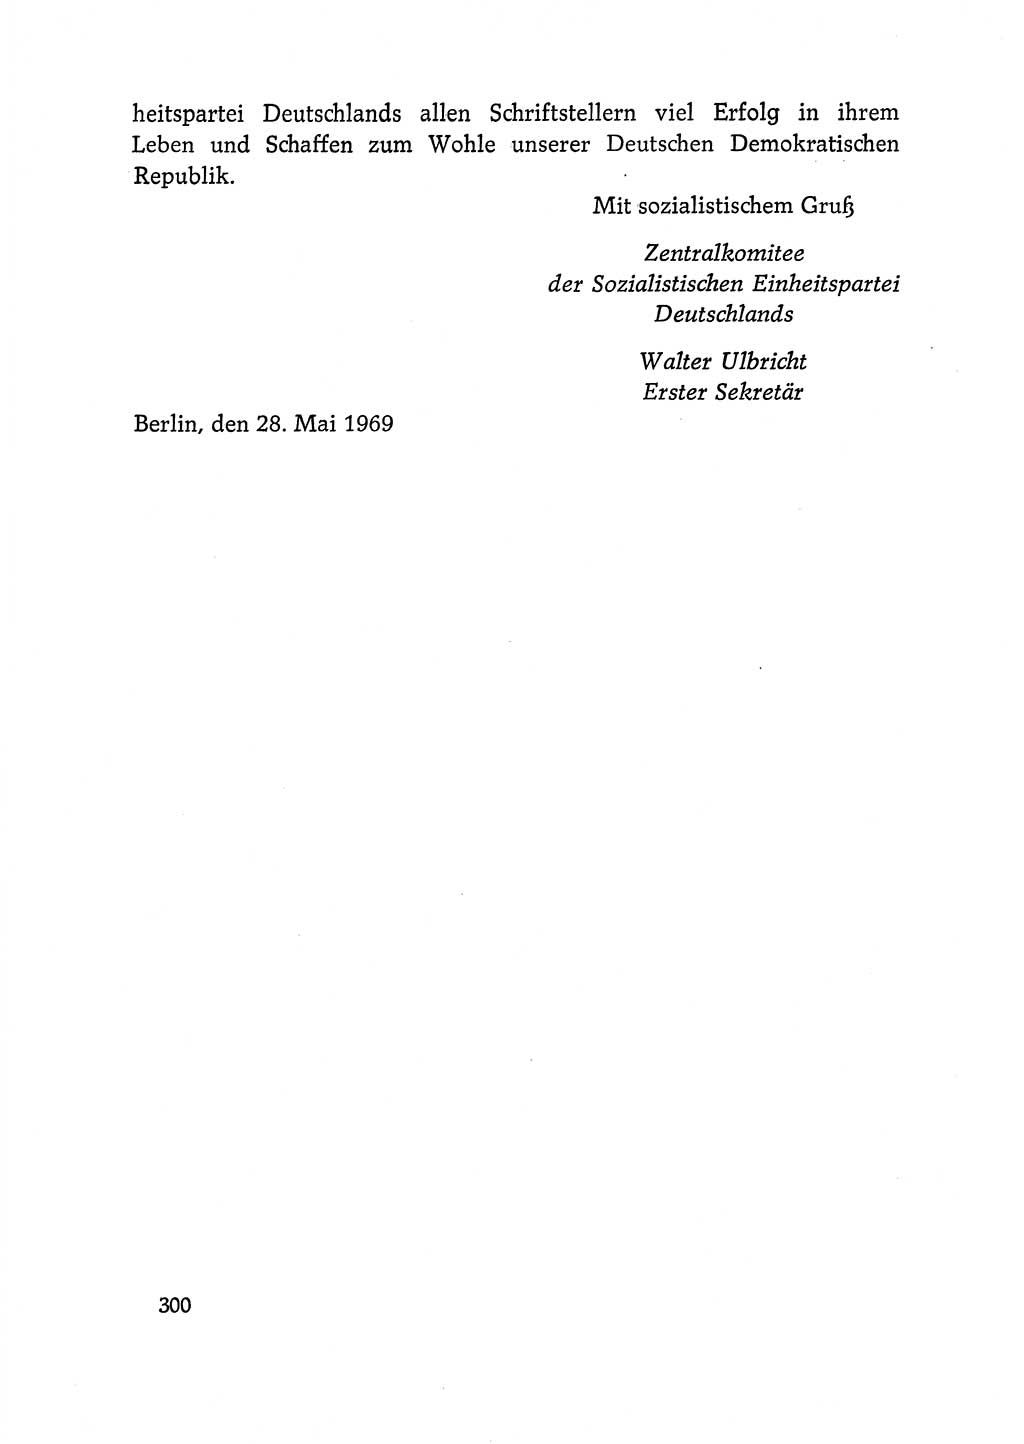 Dokumente der Sozialistischen Einheitspartei Deutschlands (SED) [Deutsche Demokratische Republik (DDR)] 1968-1969, Seite 300 (Dok. SED DDR 1968-1969, S. 300)